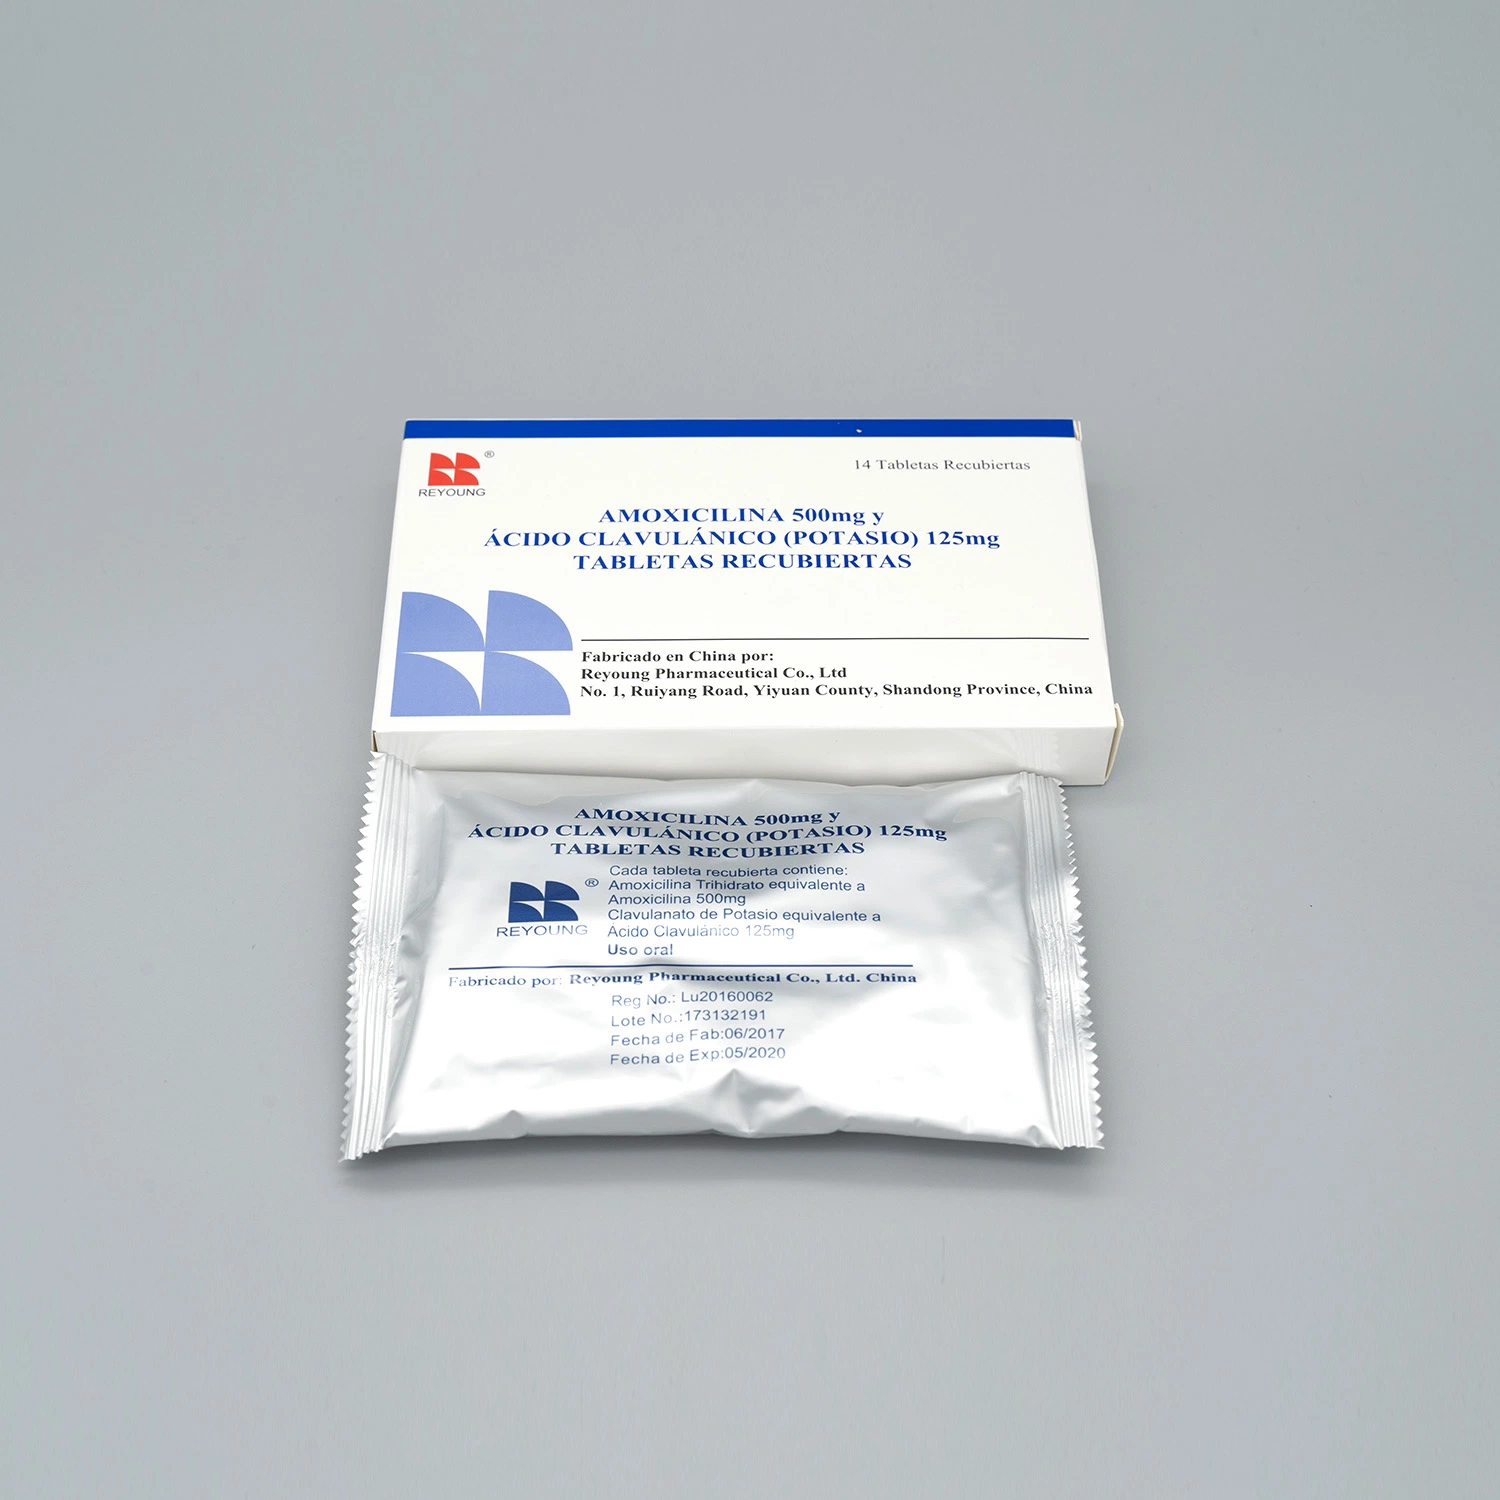 La amoxicilina y clavulanato de potasio tabletas